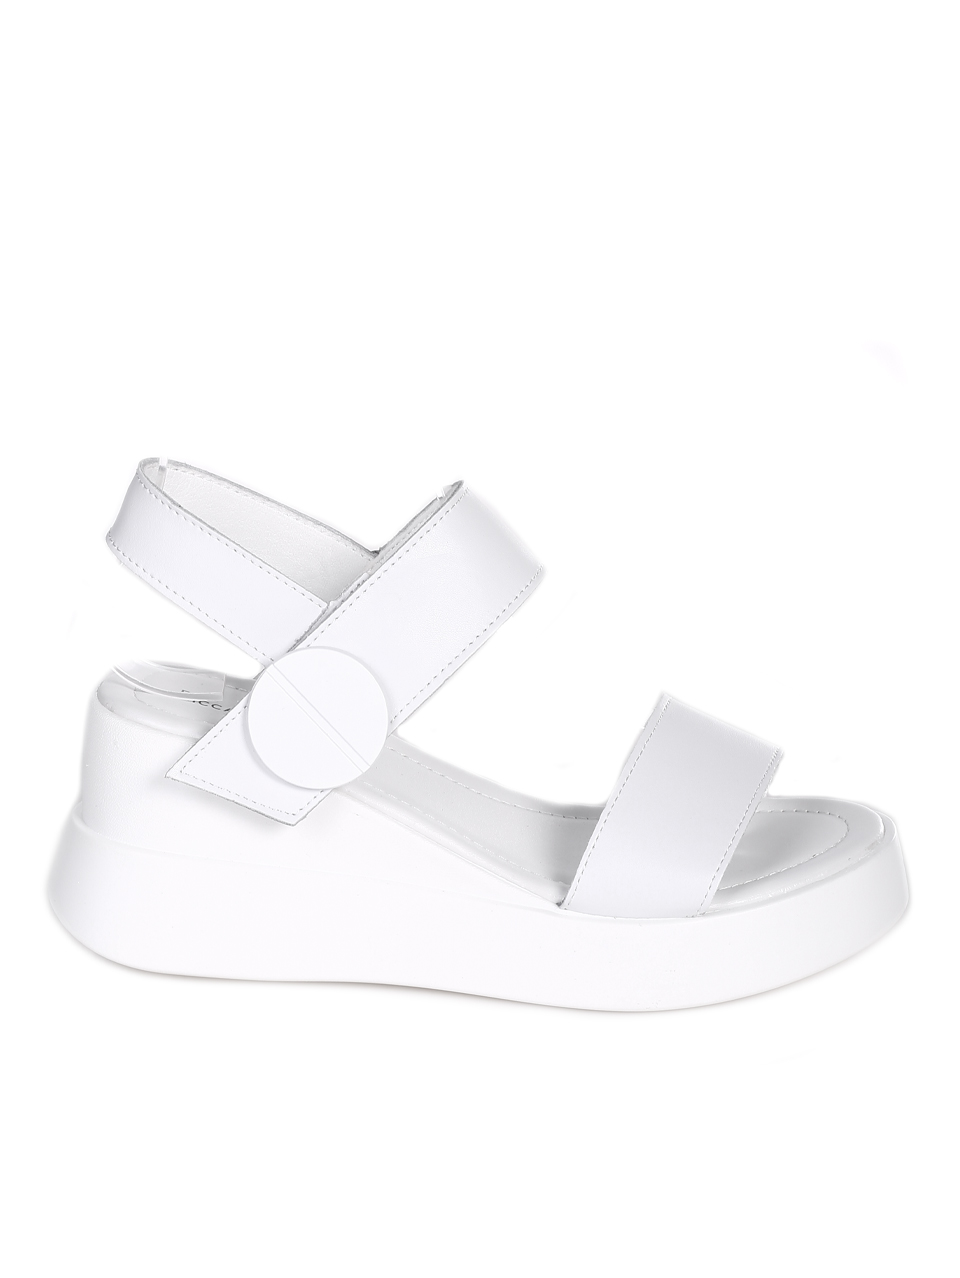 Ежедневни дамски сандали от естествена кожа в бяло 4AF-24147 white(23151)